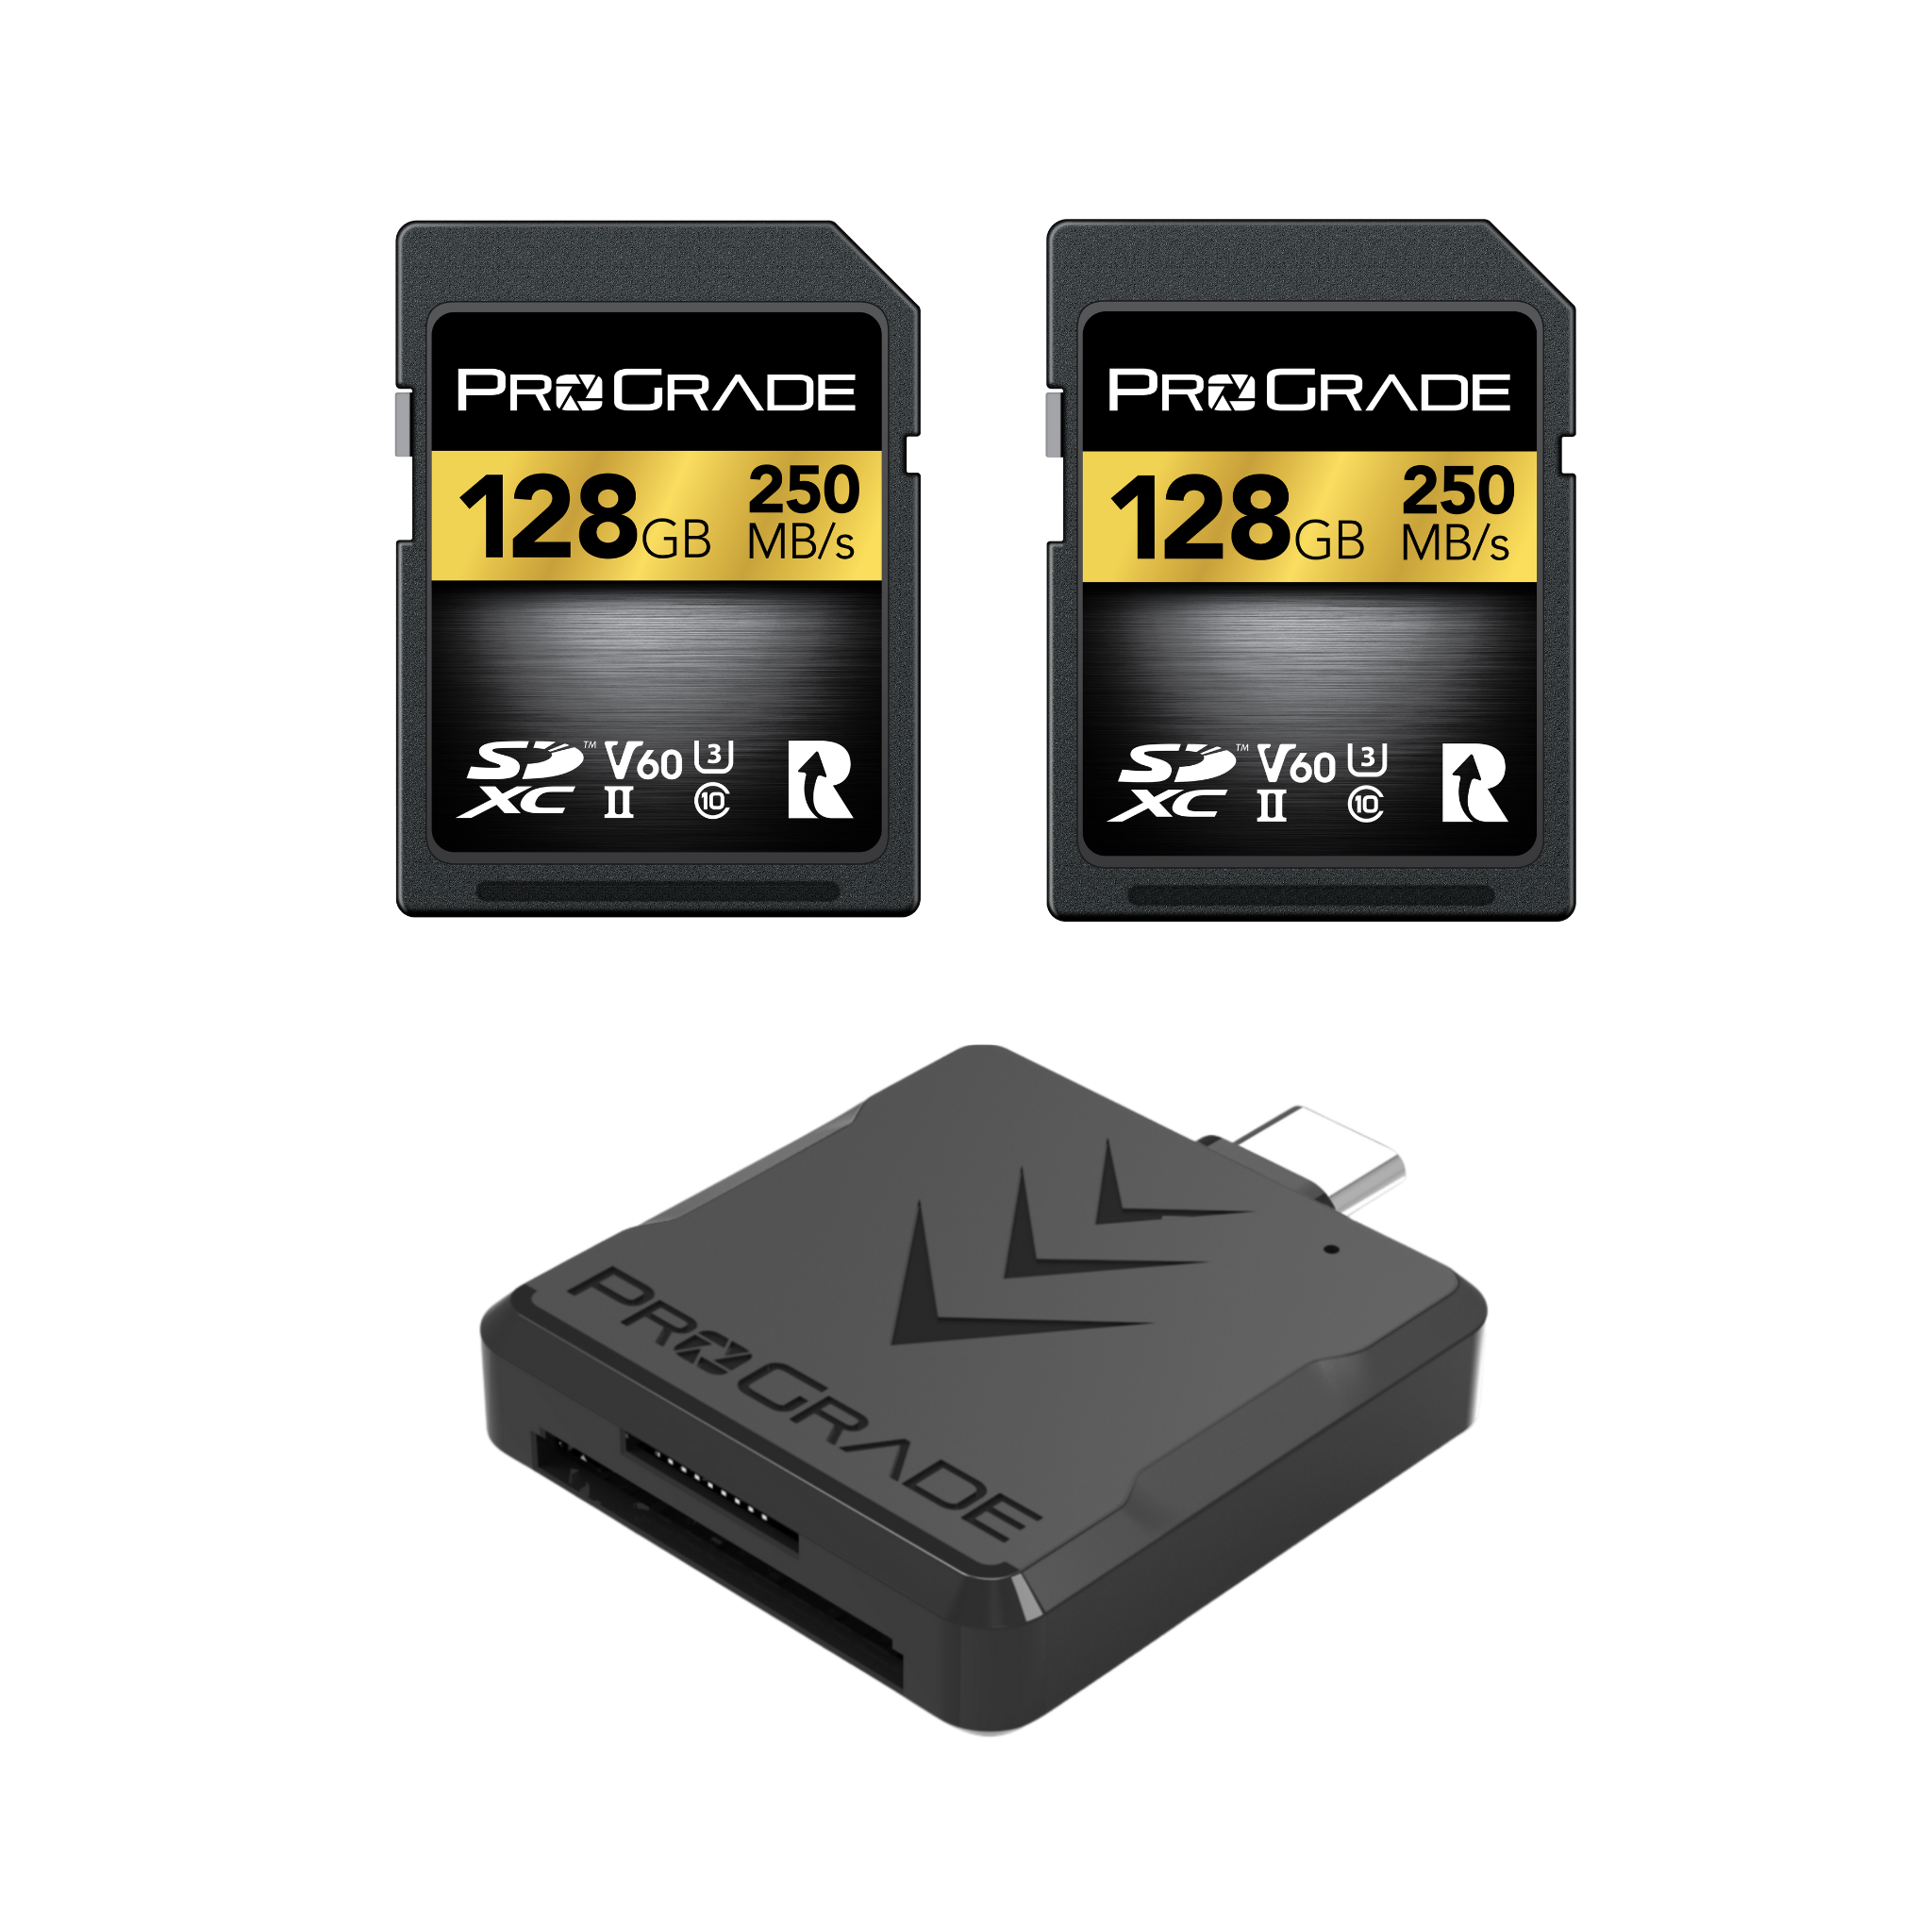 SD V60 2-Pack & Memory Card Reader Bundles